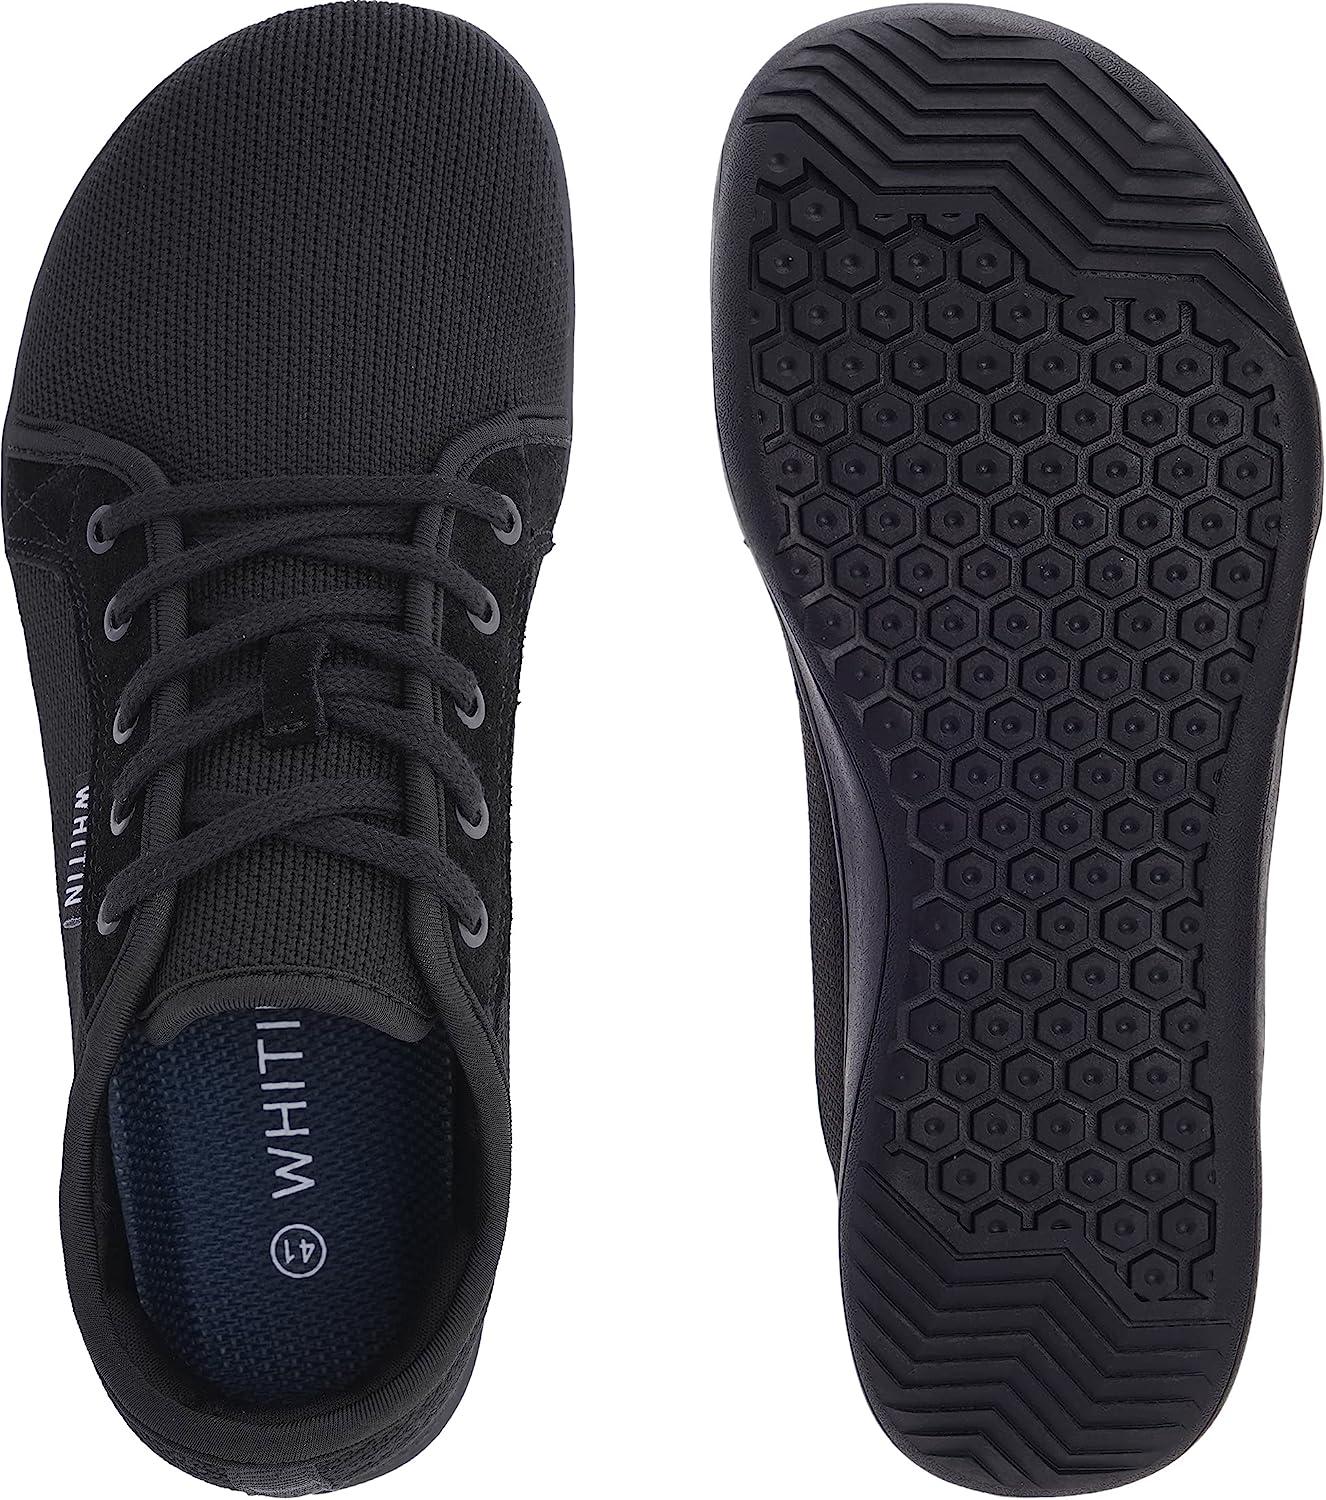 WHITIN Men's Wide Minimalist Barefoot Sneakers | Zero Drop Sole ...